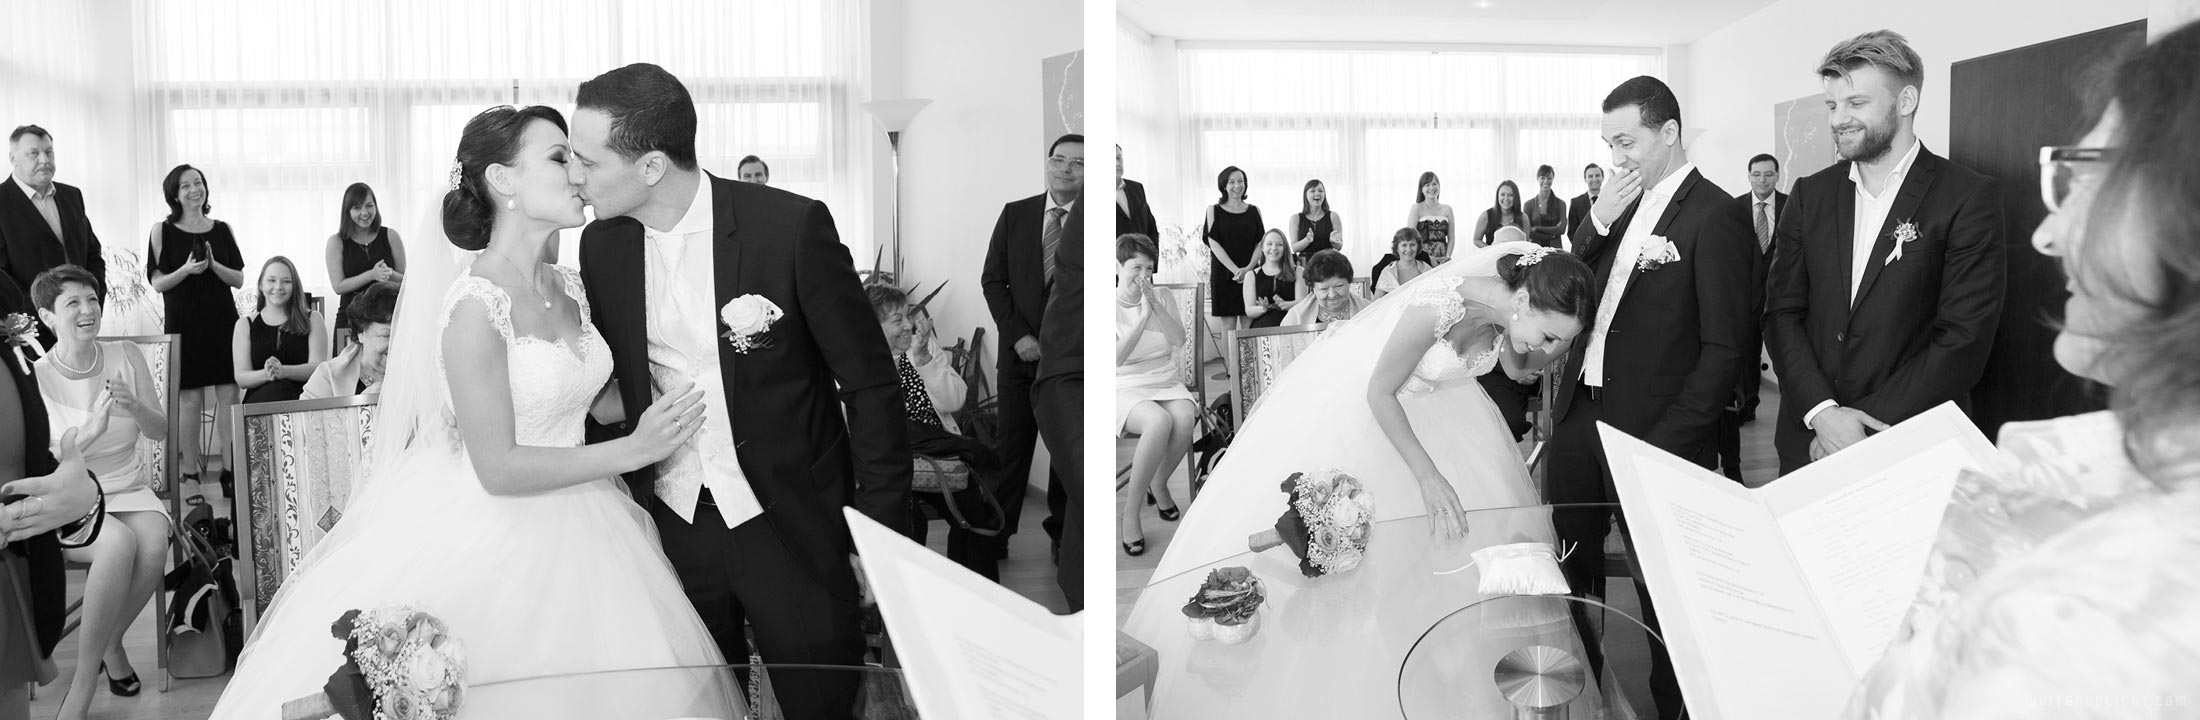 Классическая свадьба – портреты свадебный фотограф Германия